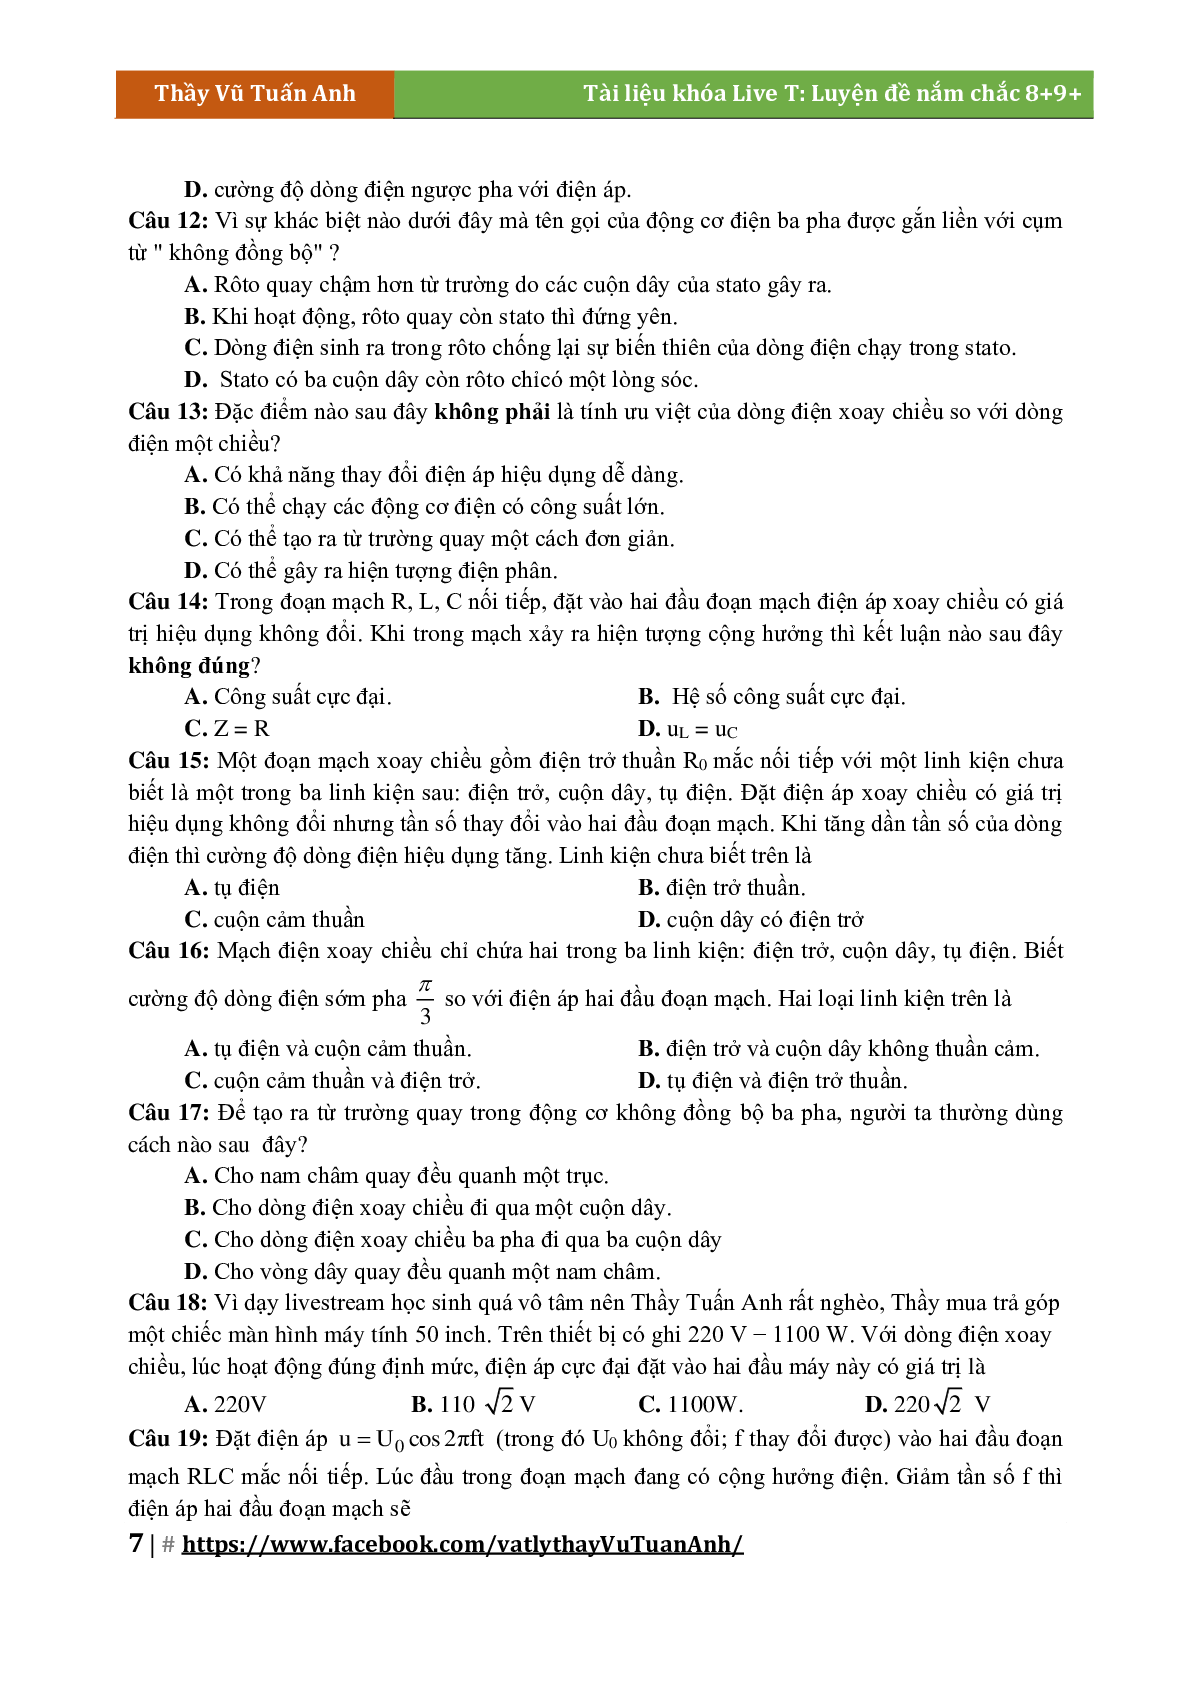 Lý Thuyết Chương Điện Xoay Chiều Môn Vật Lý Lớp 12 (trang 7)